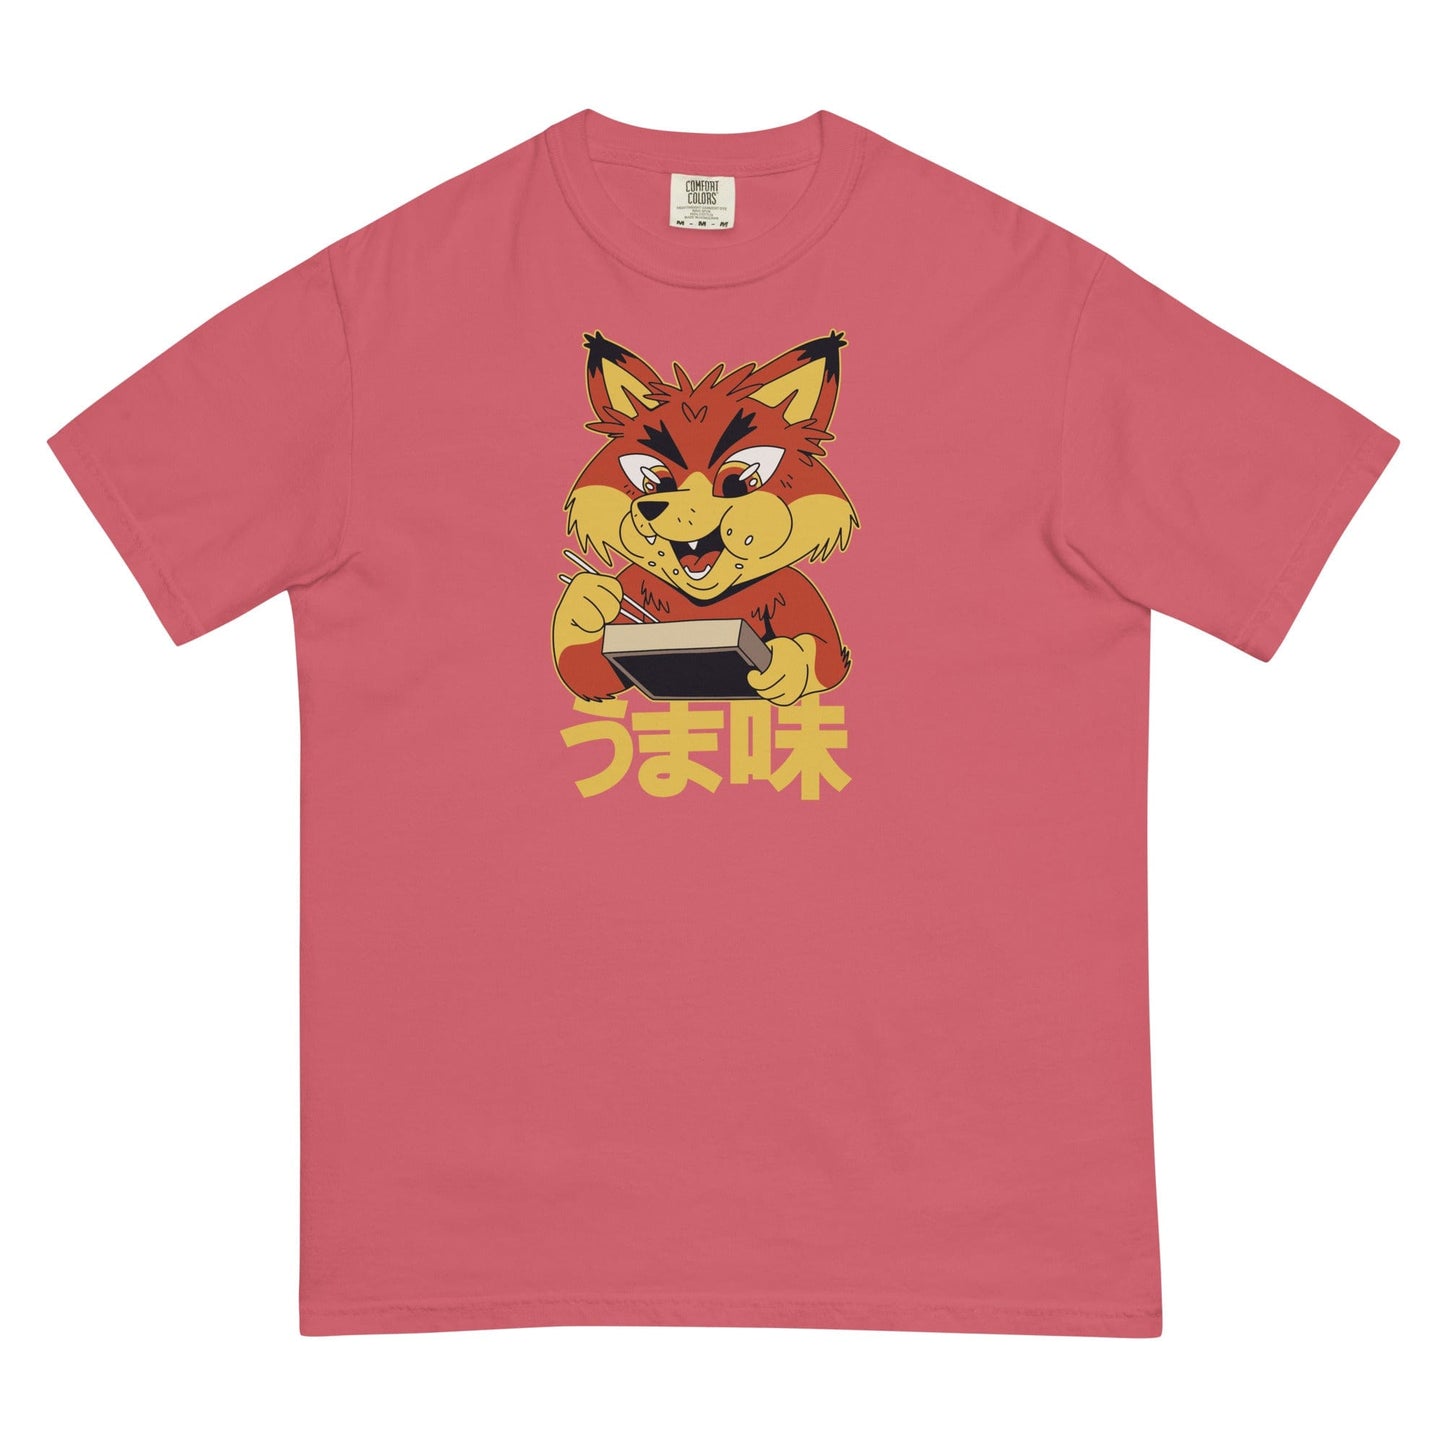 Fox t-shirt